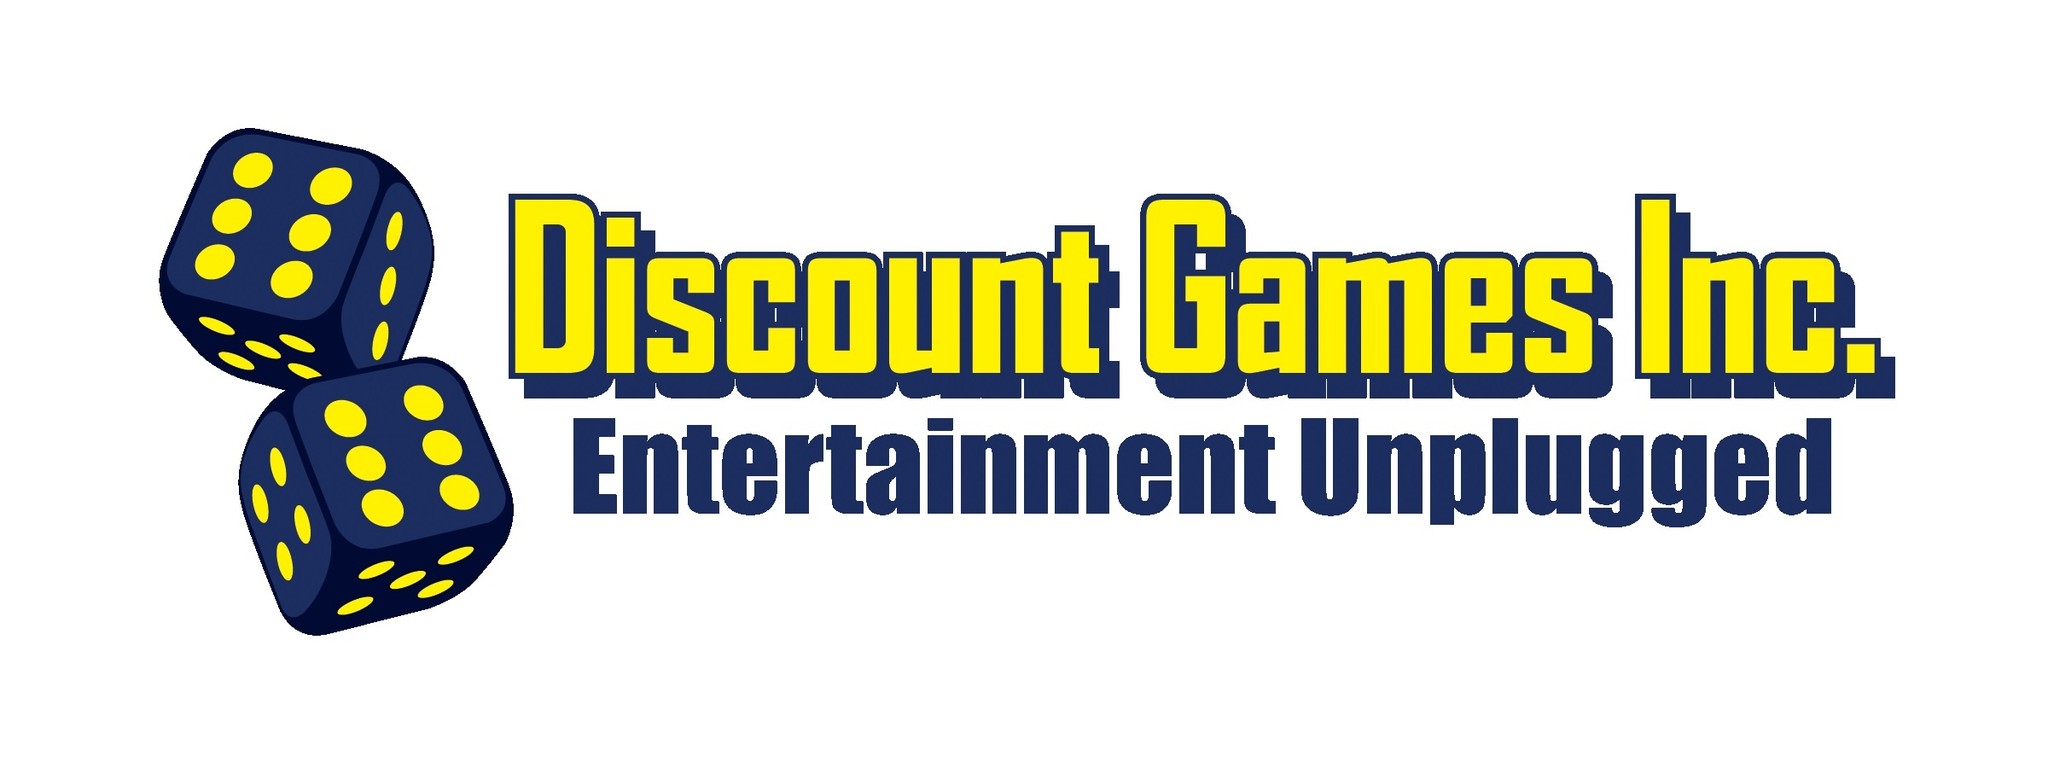 Citadel - Discount Games Inc